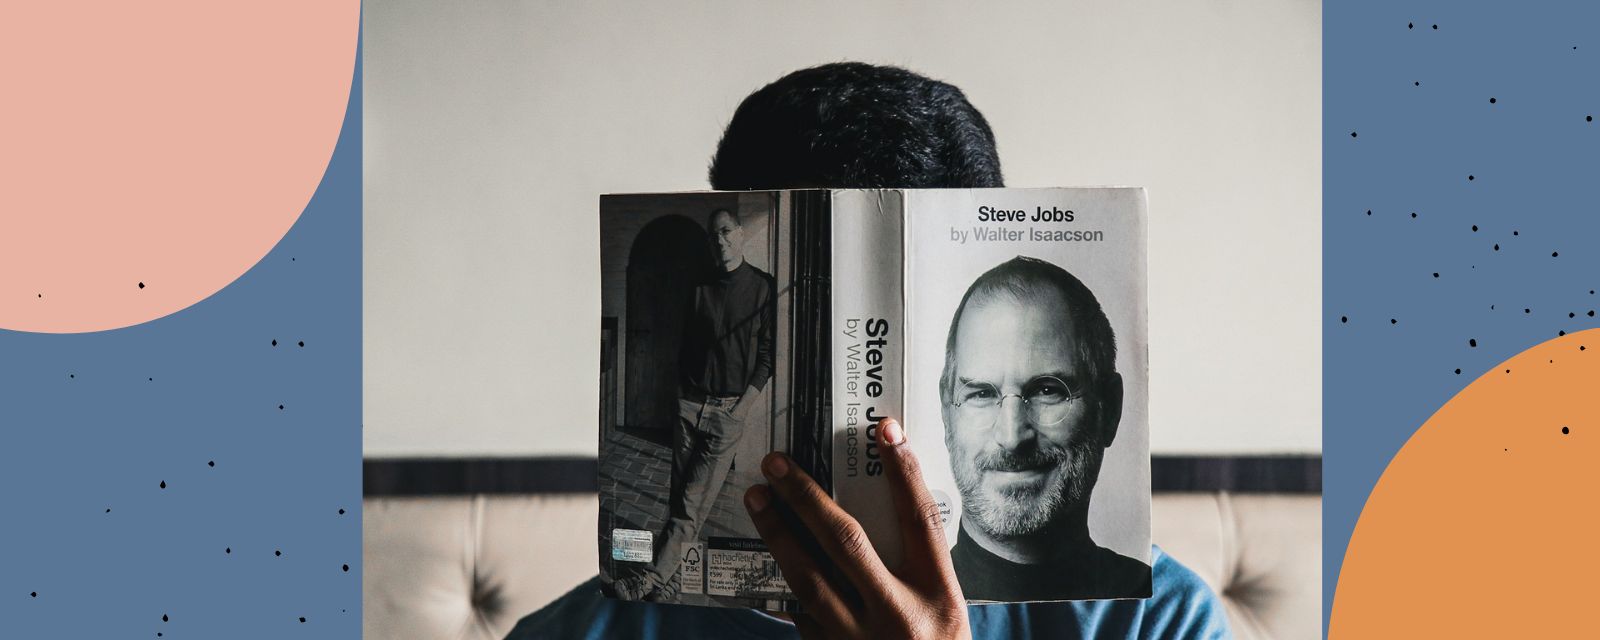 How to tell legendary stories like Steve Jobs?